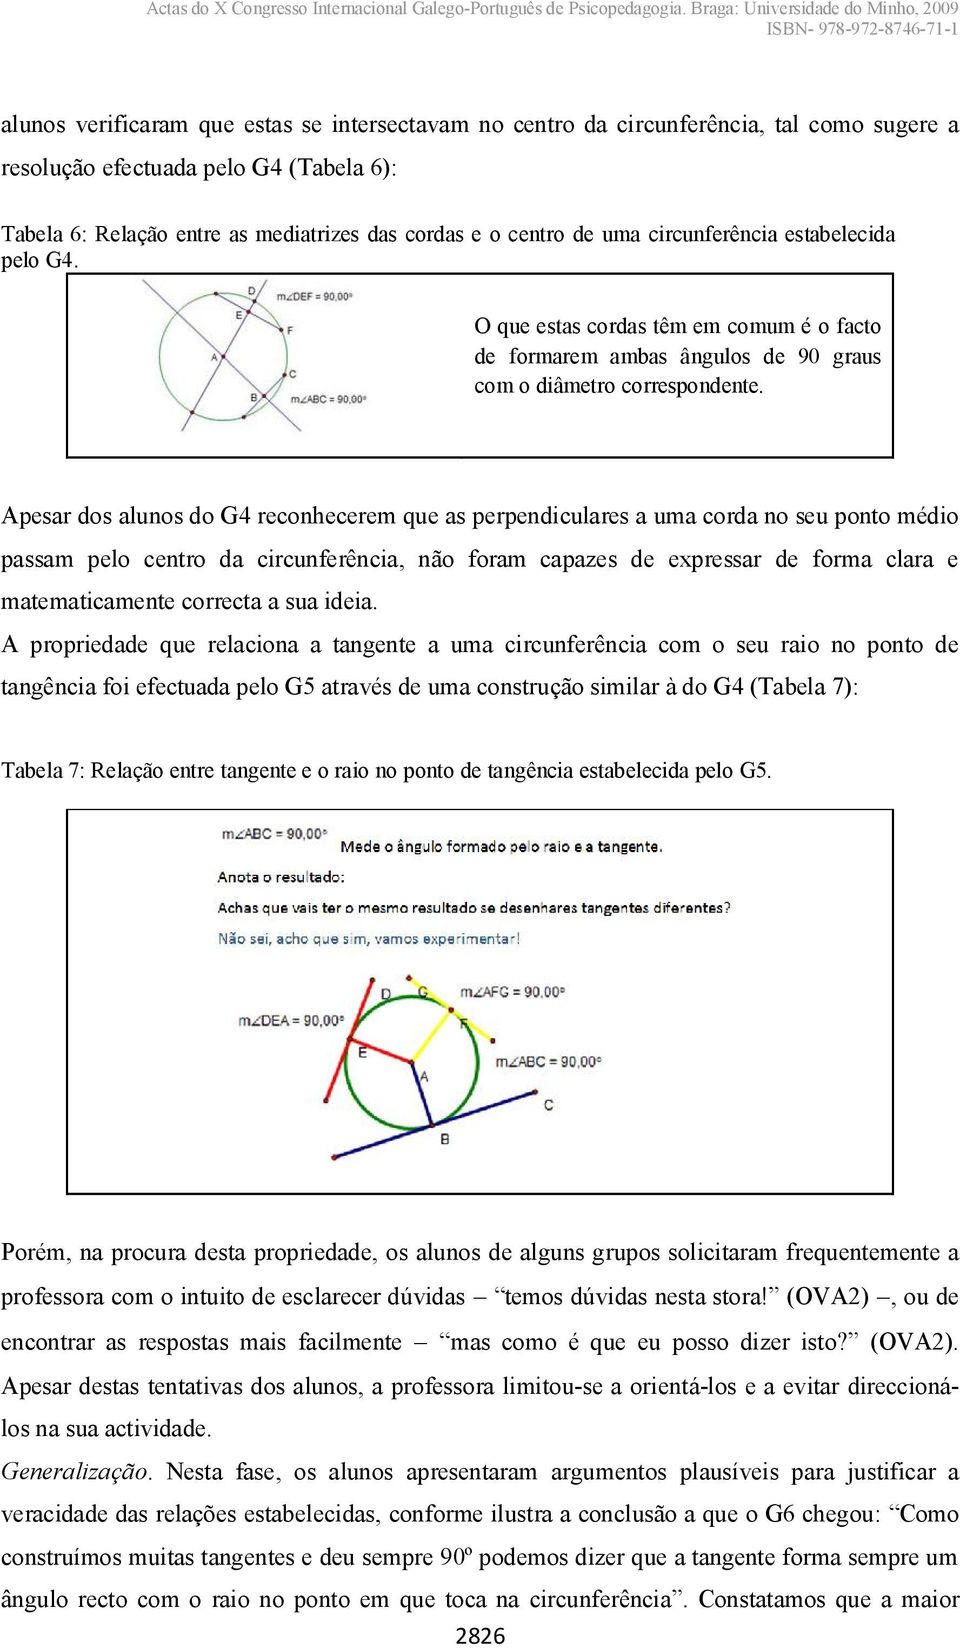 Apesar dos alunos do G4 reconhecerem que as perpendiculares a uma corda no seu ponto médio passam pelo centro da circunferência, não foram capazes de expressar de forma clara e matematicamente